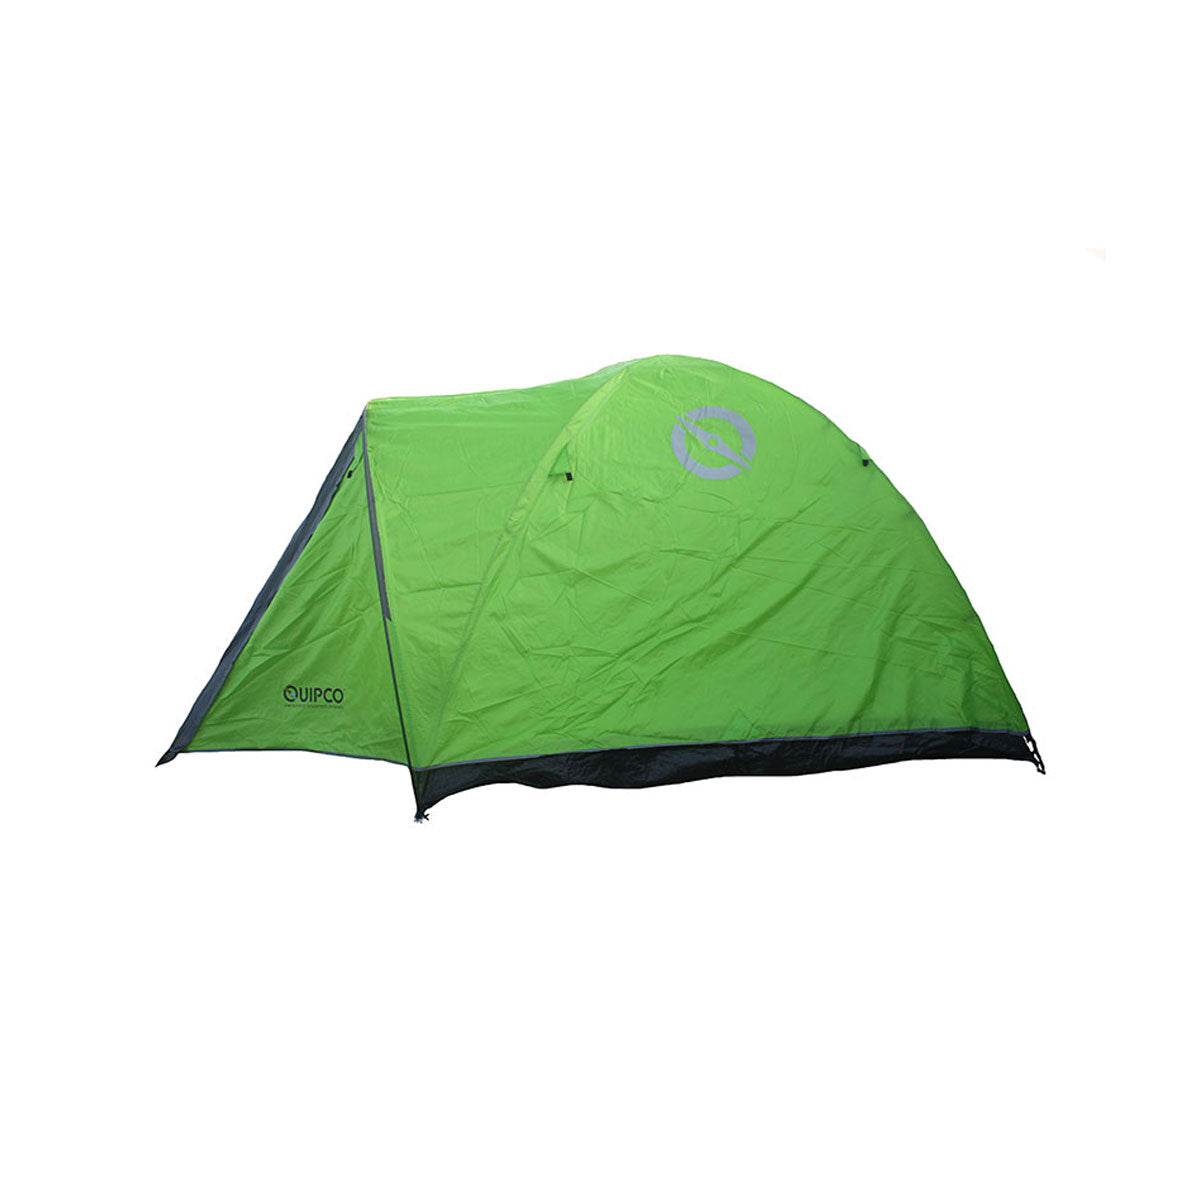 Gecko 3+ Camping Tent v2.0 (Fibreglass Poles) 5